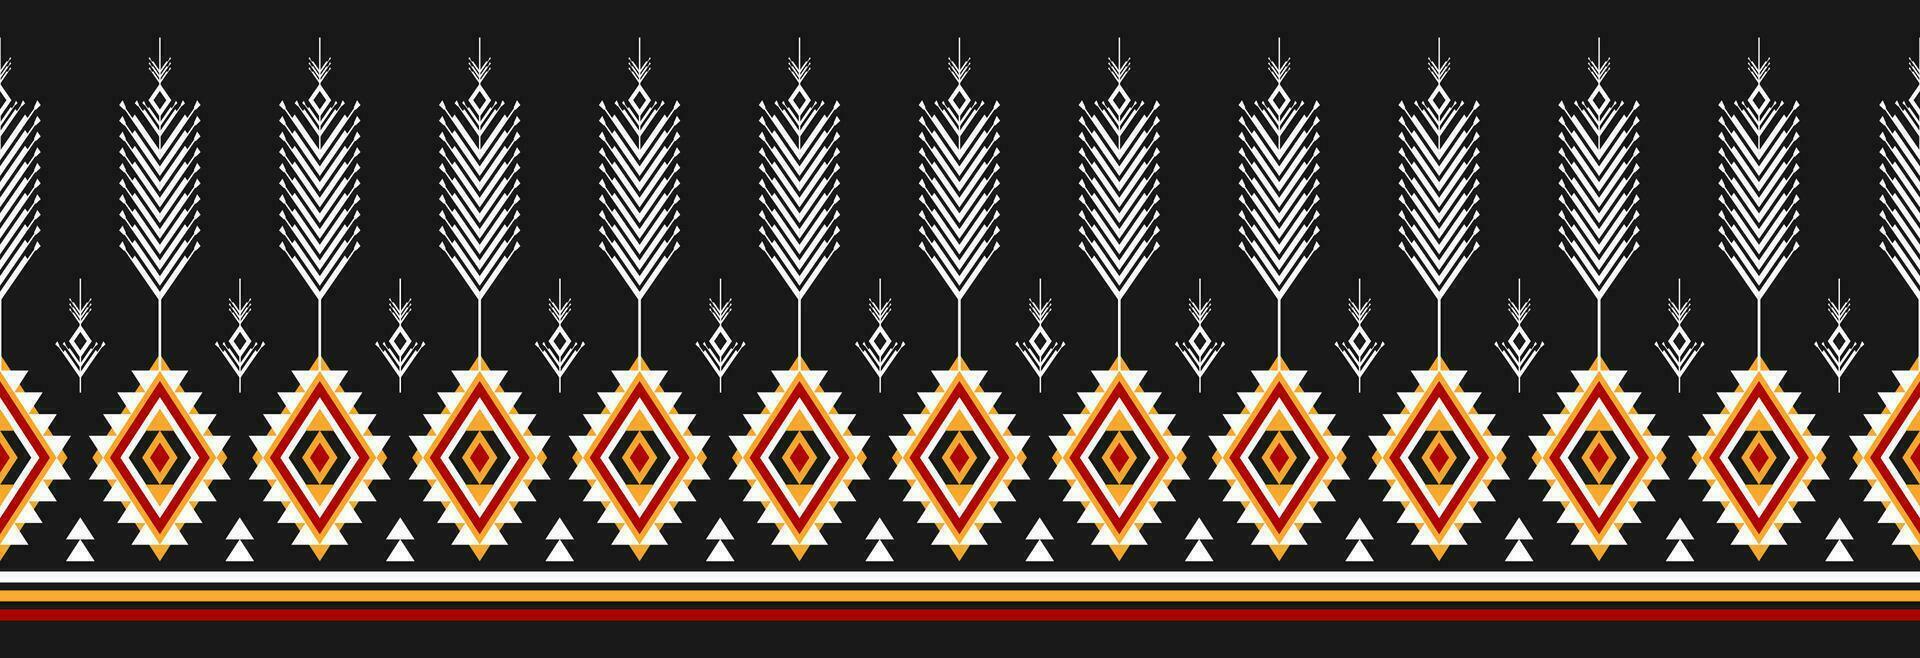 frontière ethnique tribal modèle art. populaire broderie, et mexicain style. aztèque géométrique ornement imprimer. conception pour arrière-plan, illustration, tissu, vêtements, textile, imprimer, batik. vecteur